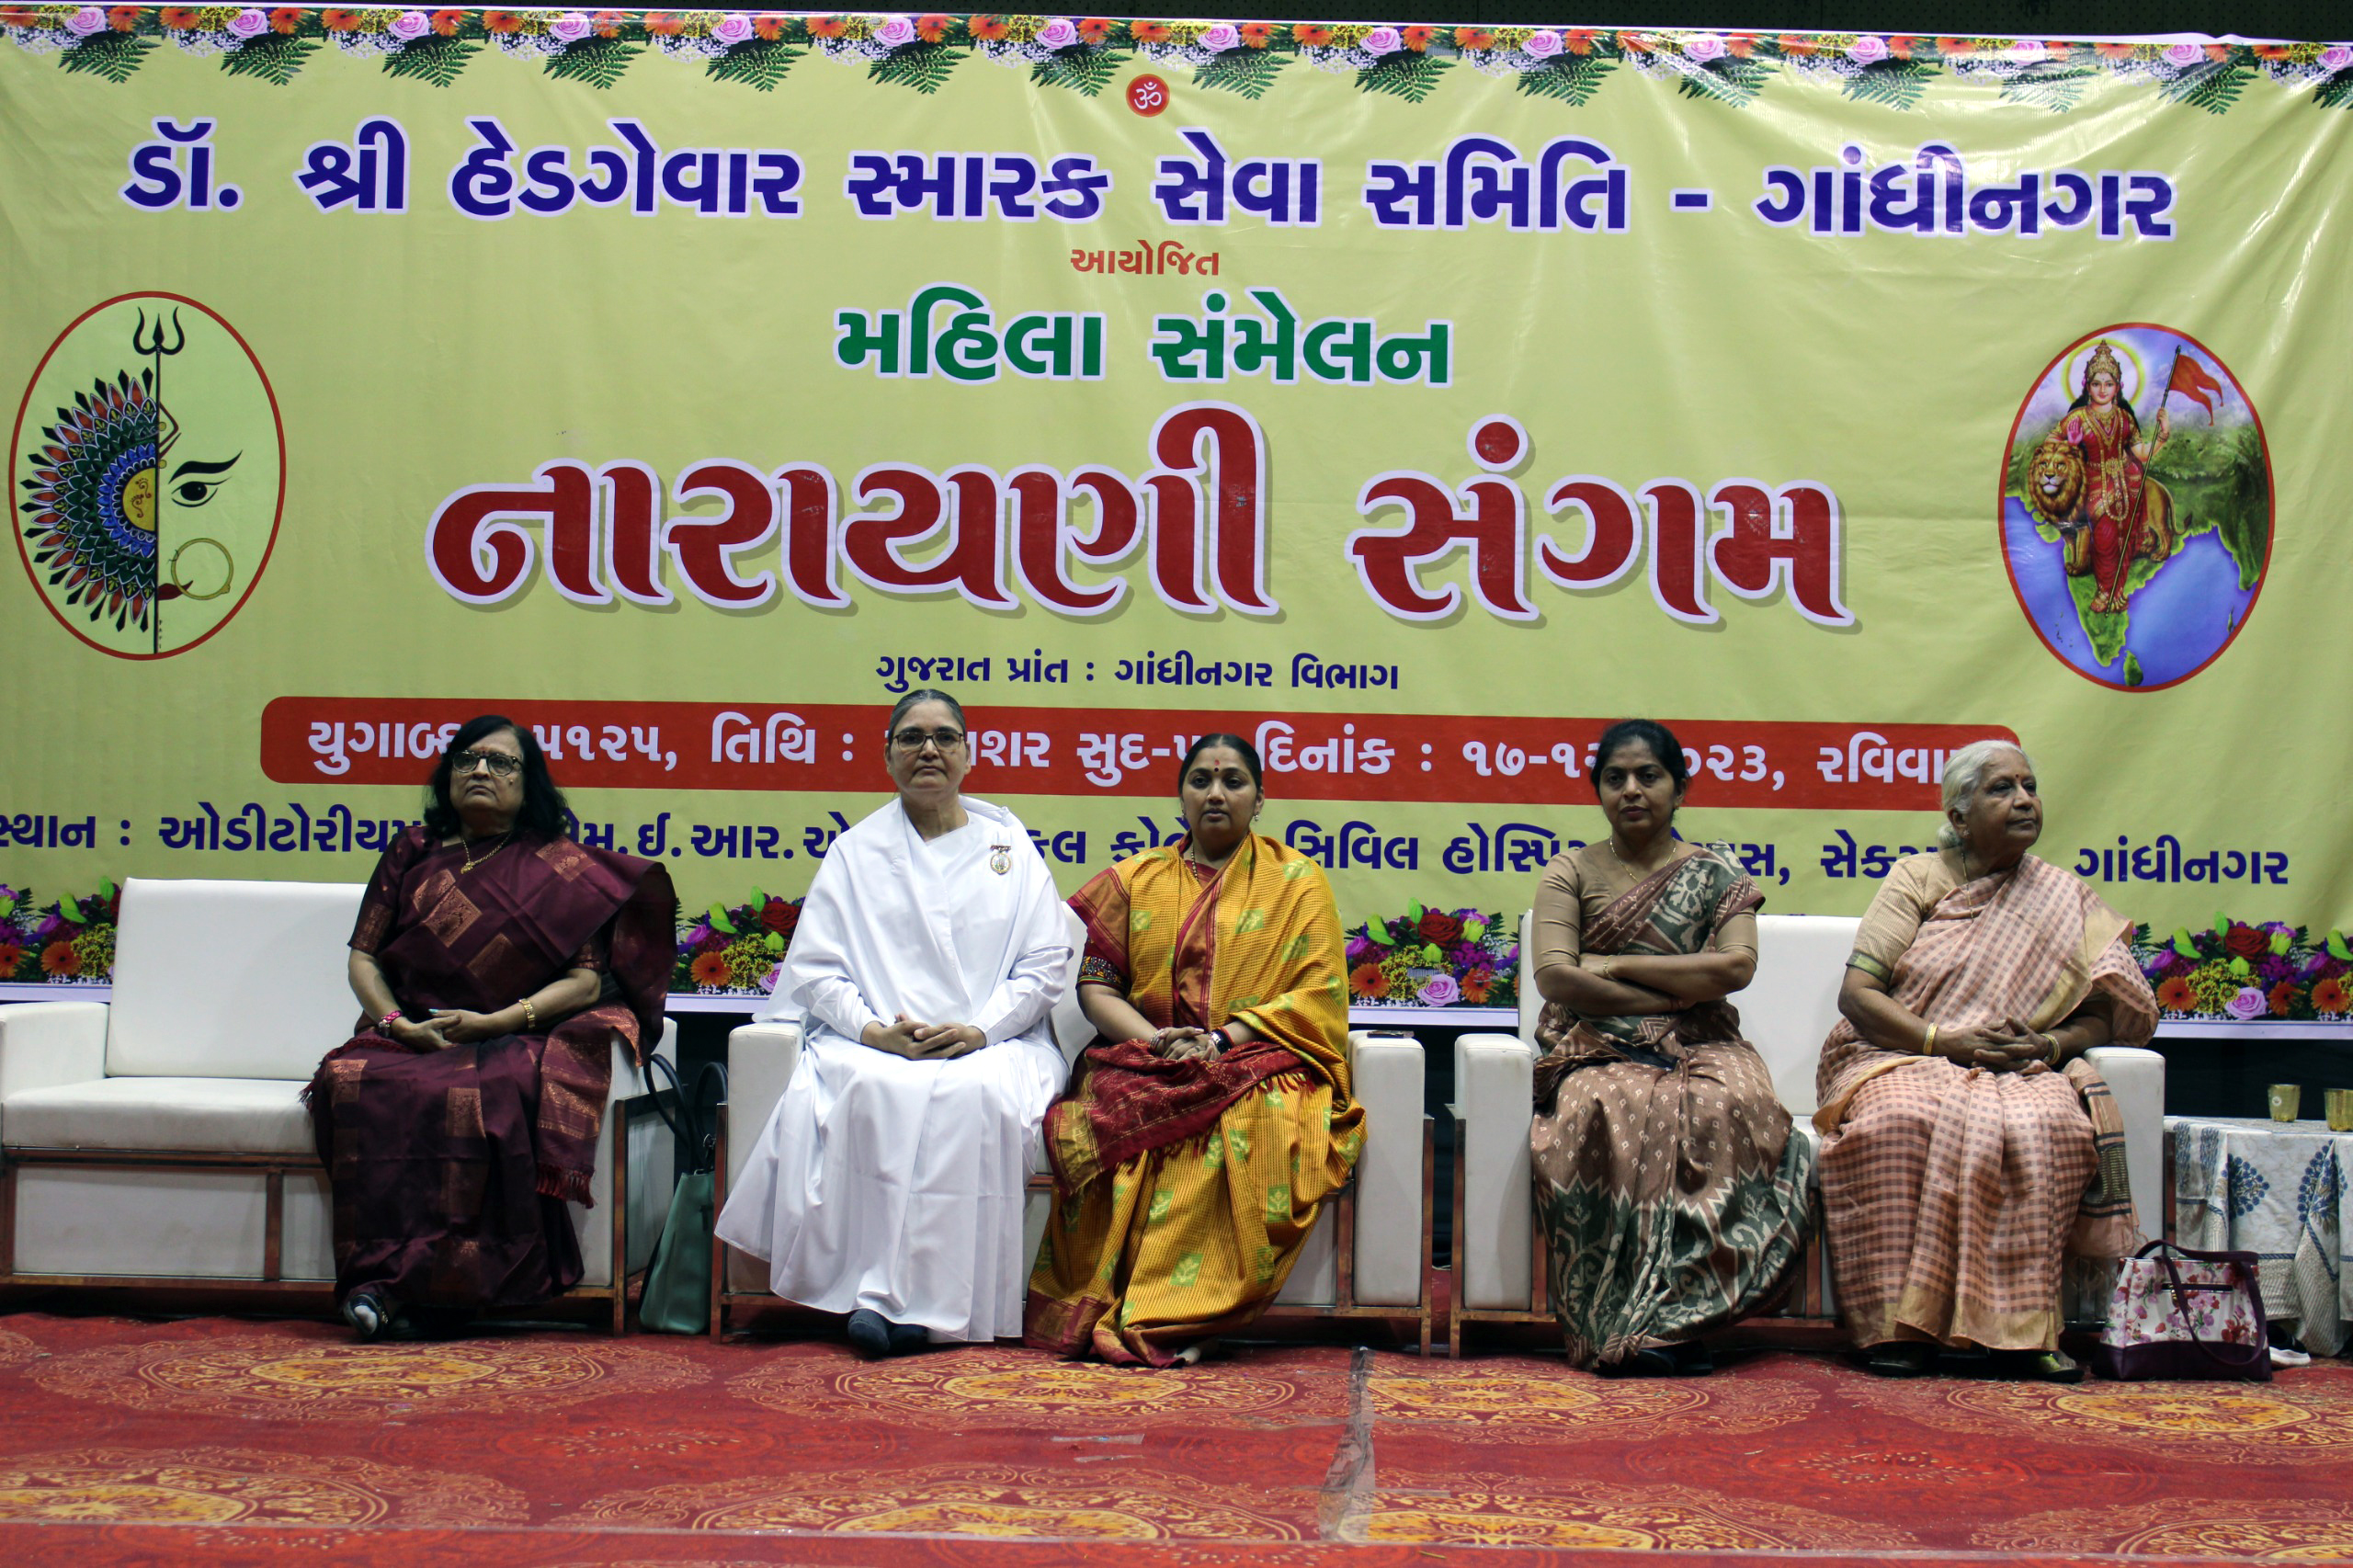 ગાંધીનગરઃ ડો. શ્રી હેડગેવાર સ્મારક સેવા સમિતિ દ્વારા મહિલા સંમેલન નારાયણી સંગમનું આયોજન